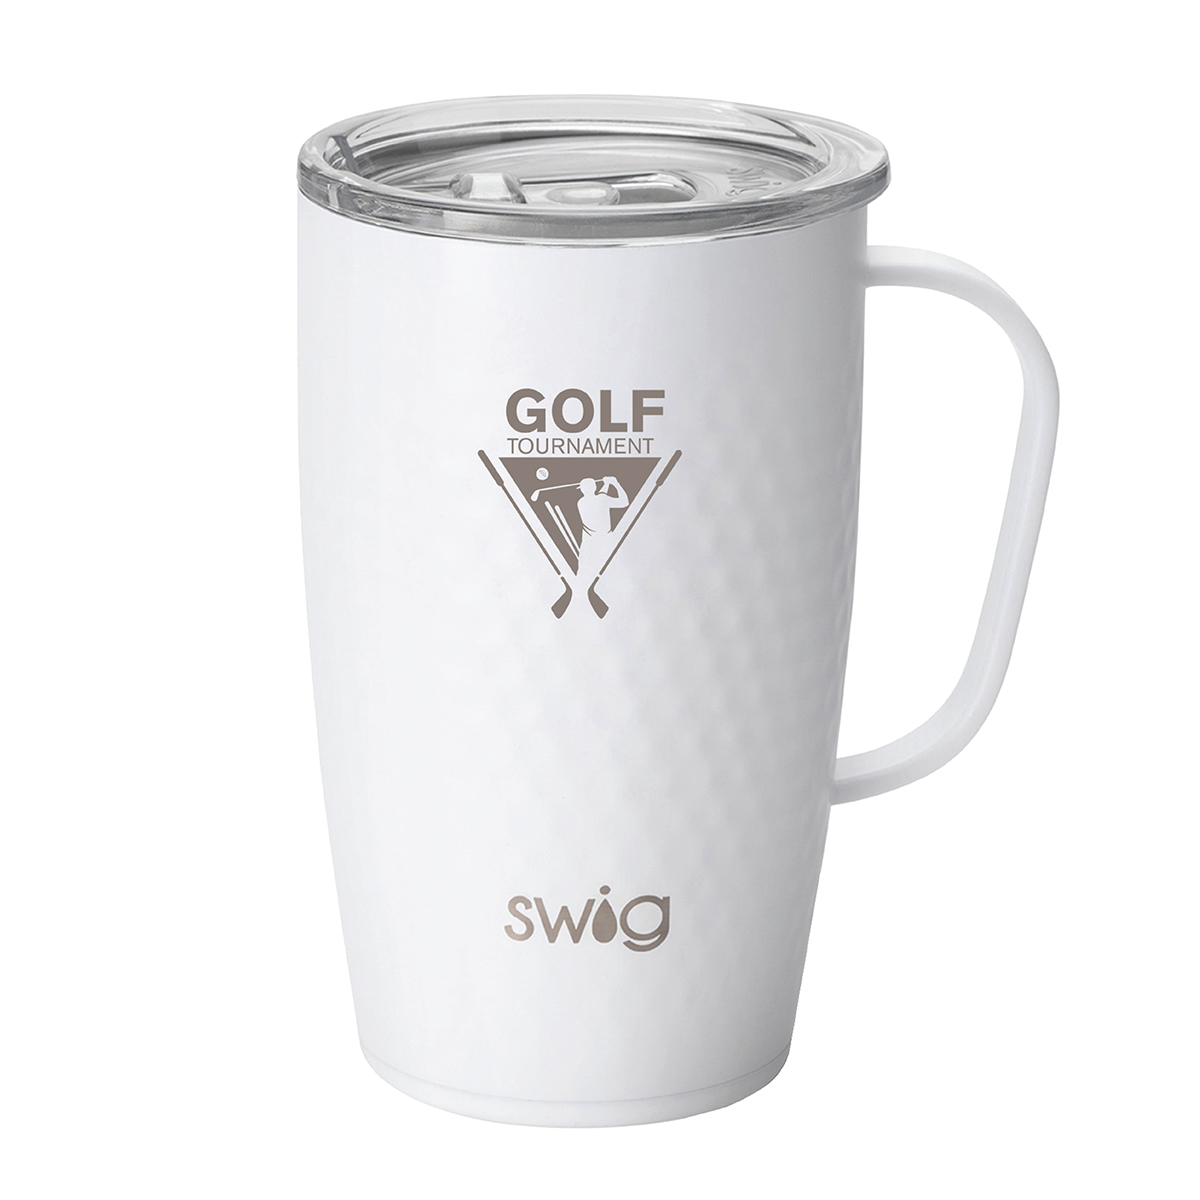 Swig® 18 oz. Golf Partee Mug, Laser Engraved